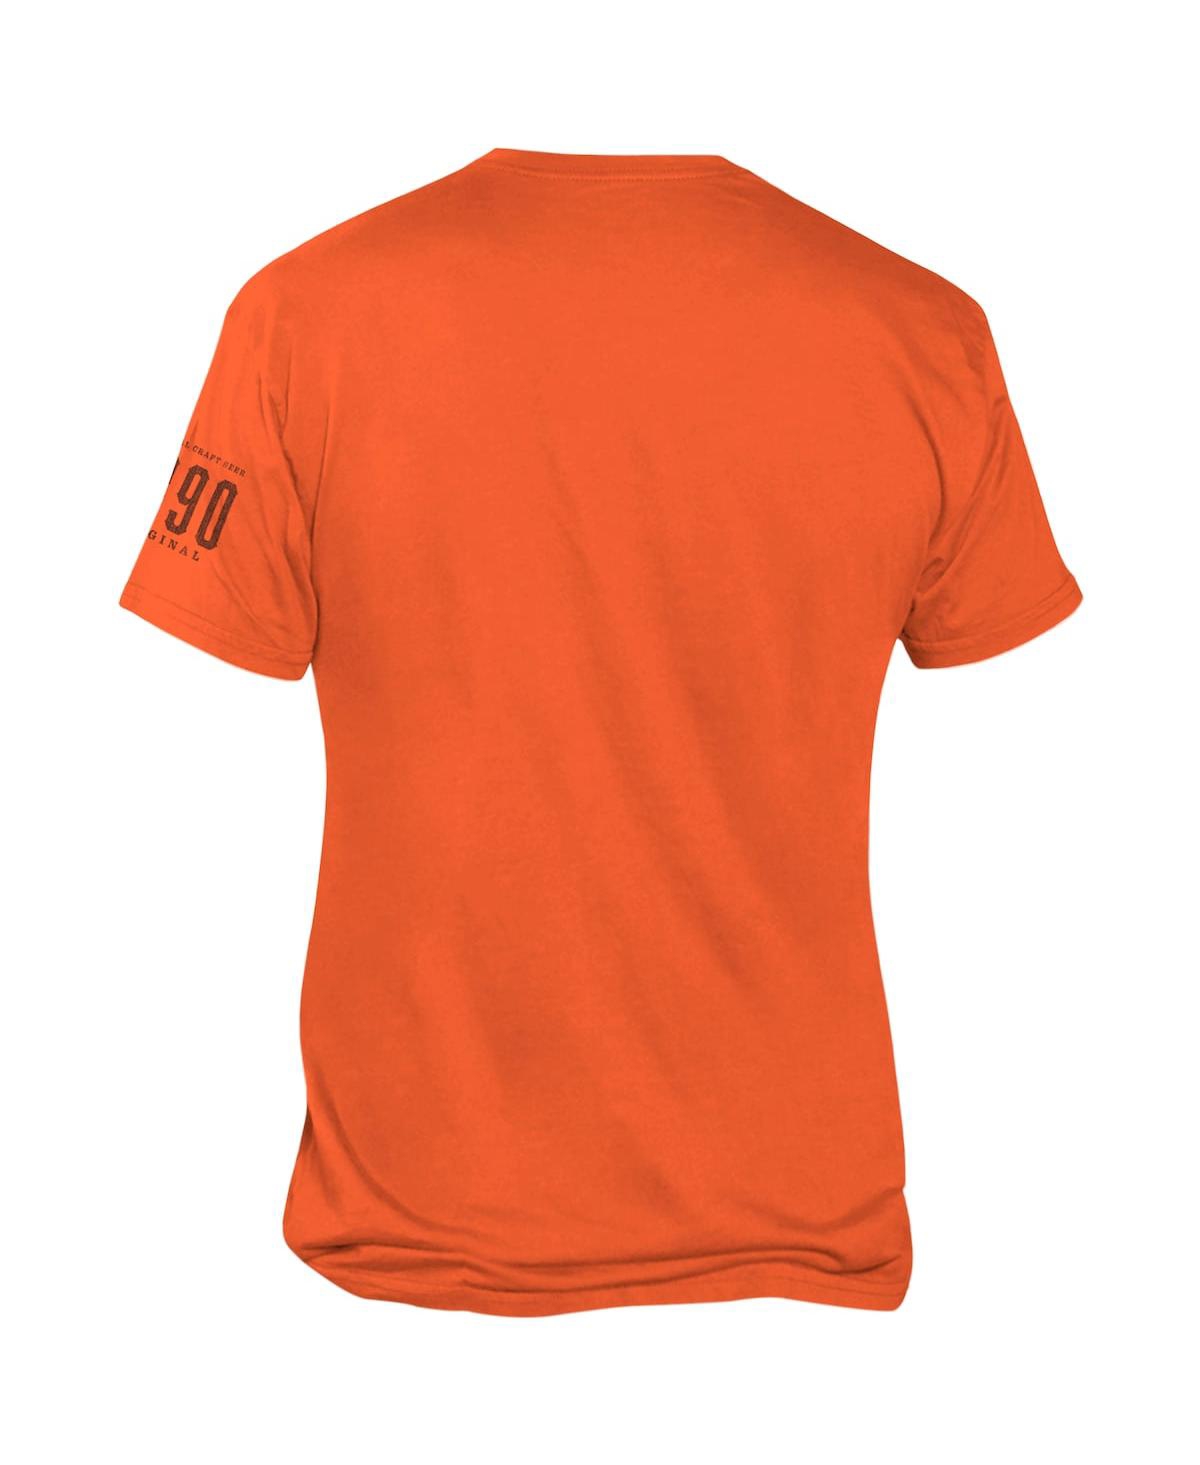 Shop Retro Brand Men's Original  Orange Oklahoma State Cowboys 1890 Original Drink Local T-shirt